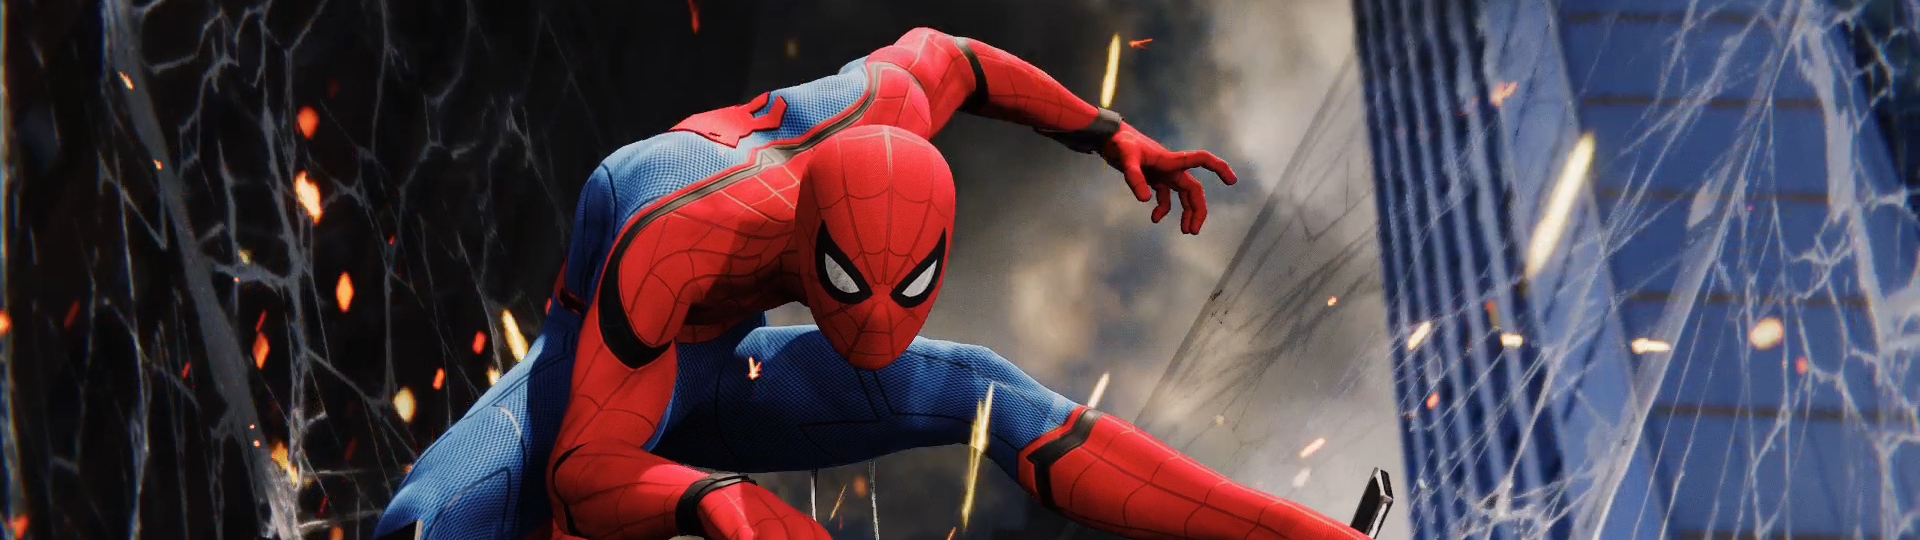 Spider-Man pro PS5 nevyjde na disku a nepůjde přenést savy z PS4 | Novinky